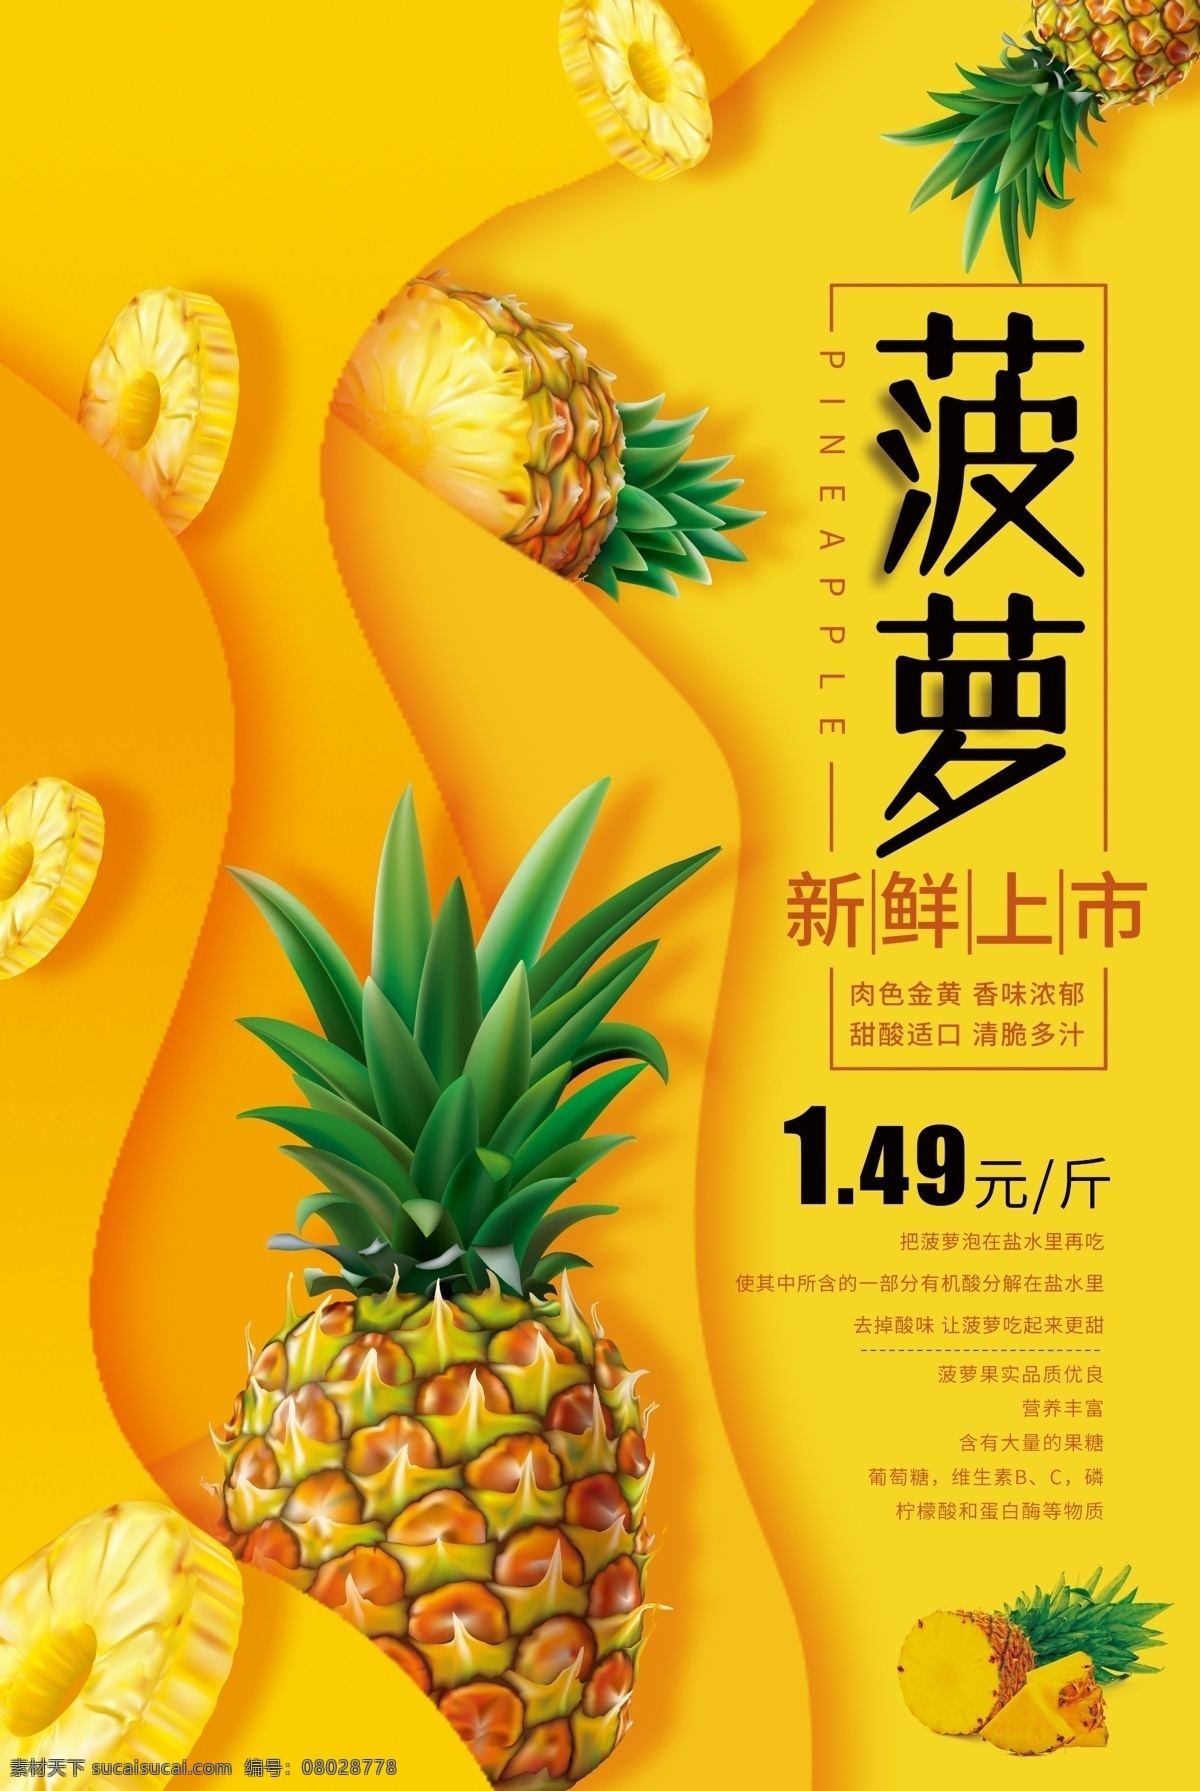 菠萝 水果 促销活动 宣传海报 促销 活动 宣传 海报 饮料 饮品 甜品 类